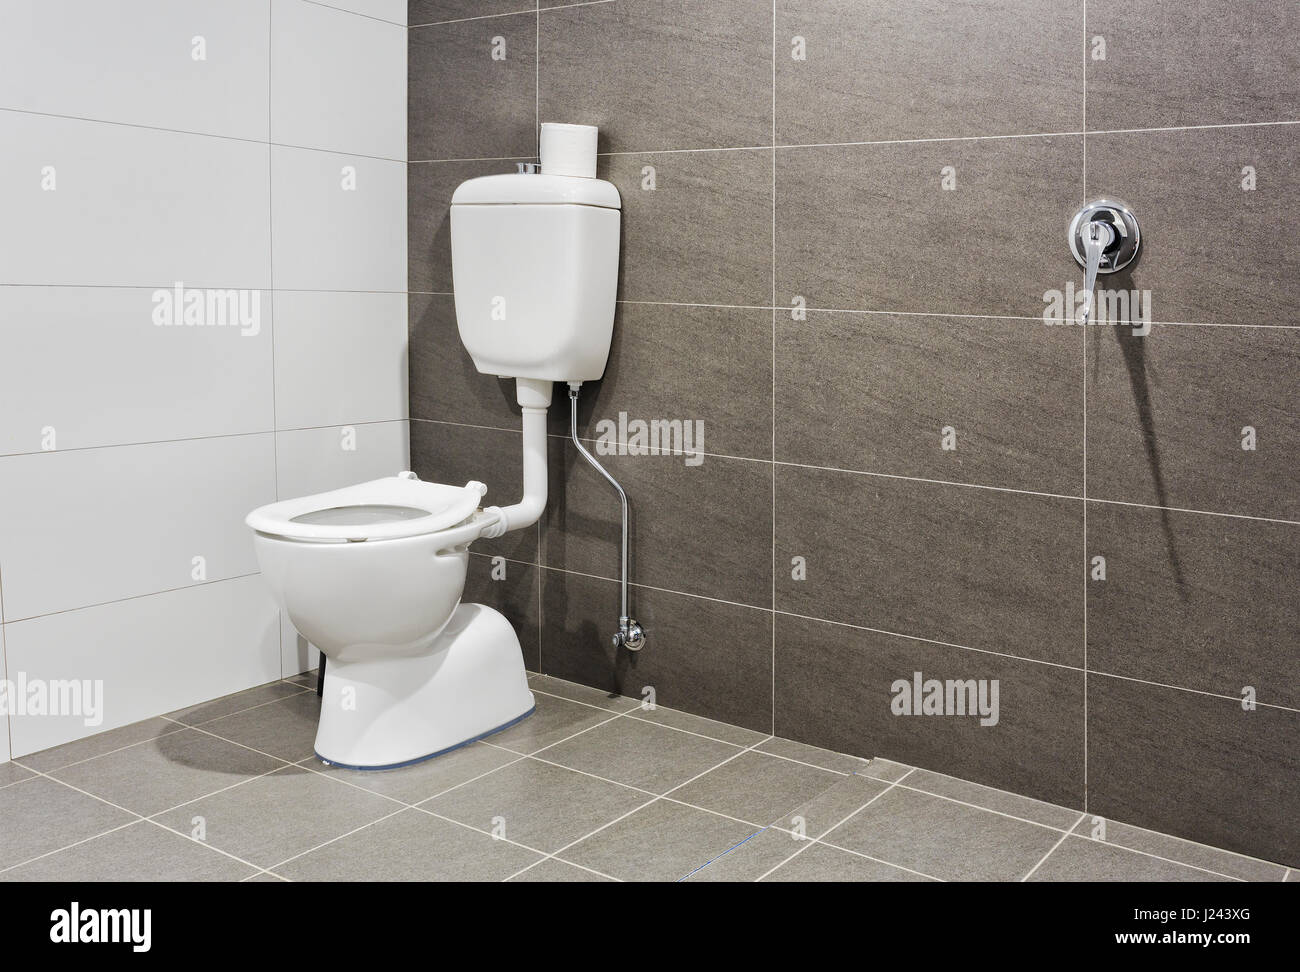 Siège de toilette en porcelaine blanche dans une salle de bains moderne pour les personnes à mobilité réduite donnant plus d'espace et d'accès. Banque D'Images